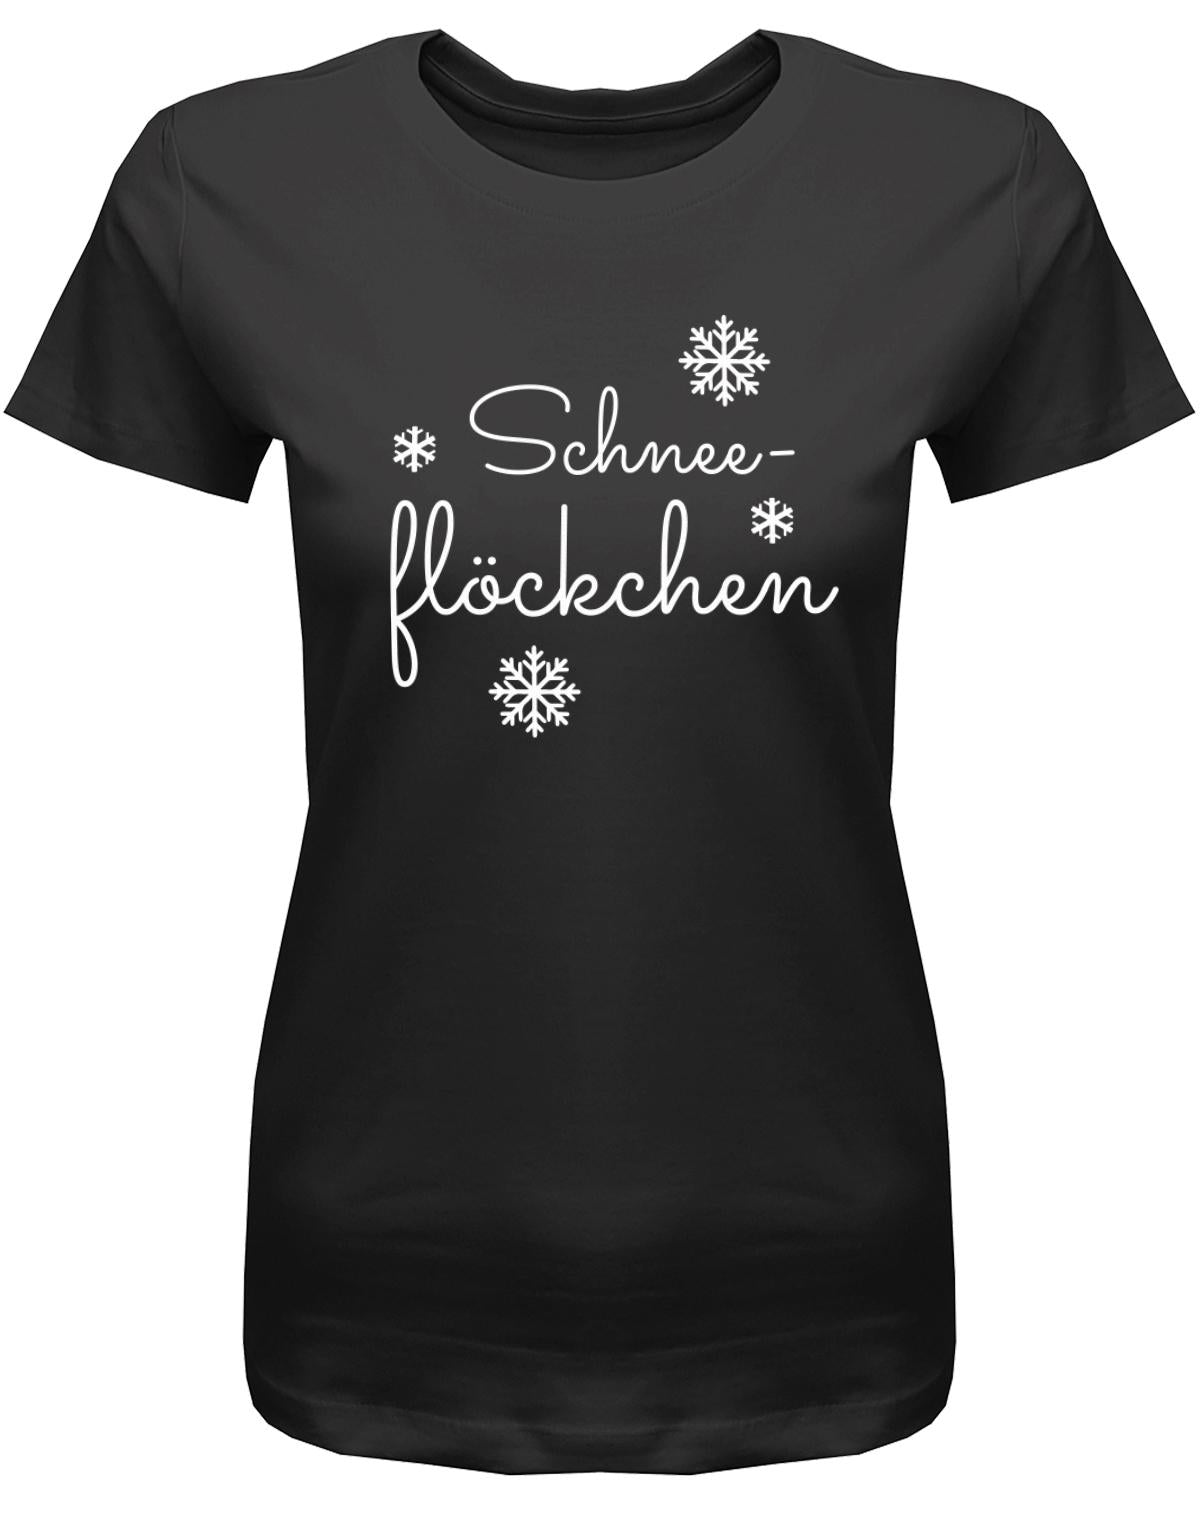 SChneefl-ckchen-Damen-Shirt-schwarz